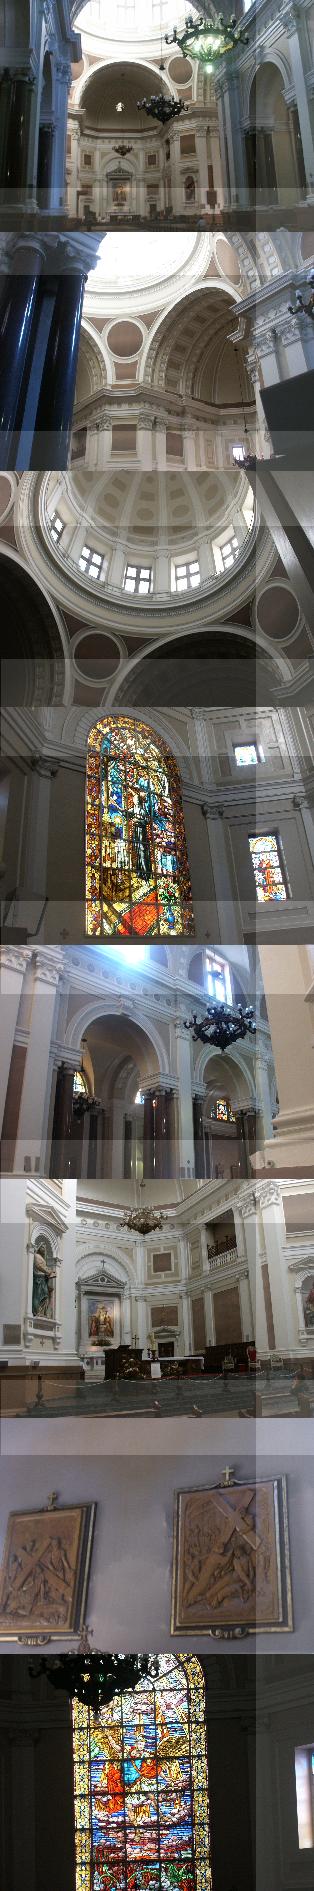 Catedral de Porto Alegre. Interior